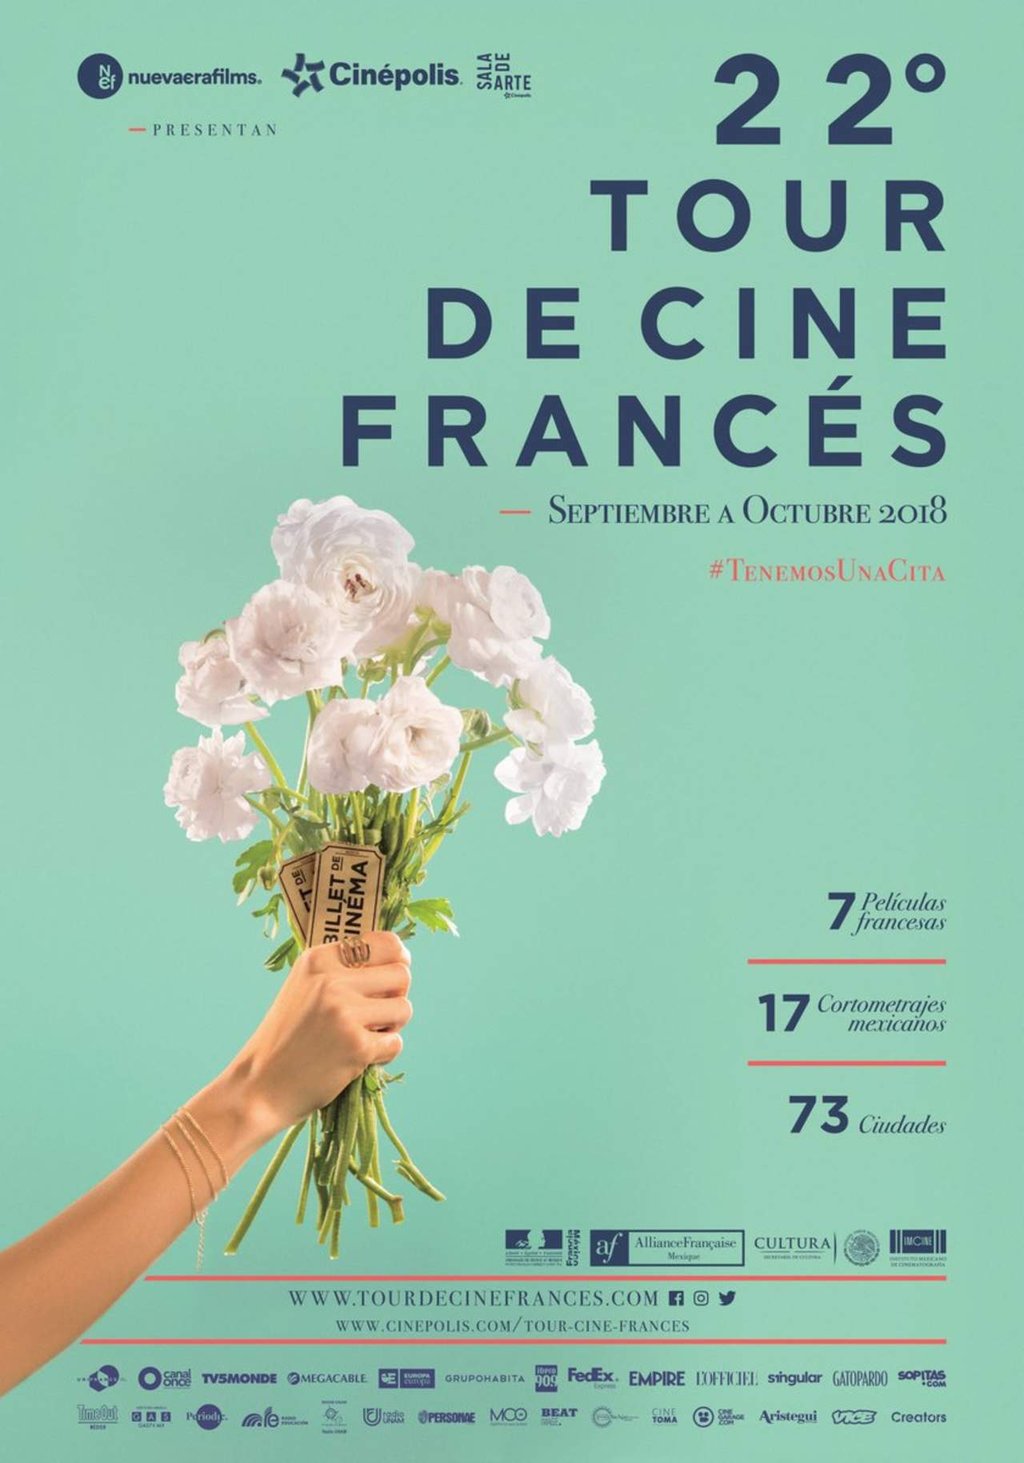 Tour de Cine Francés visitará 73 ciudades del país